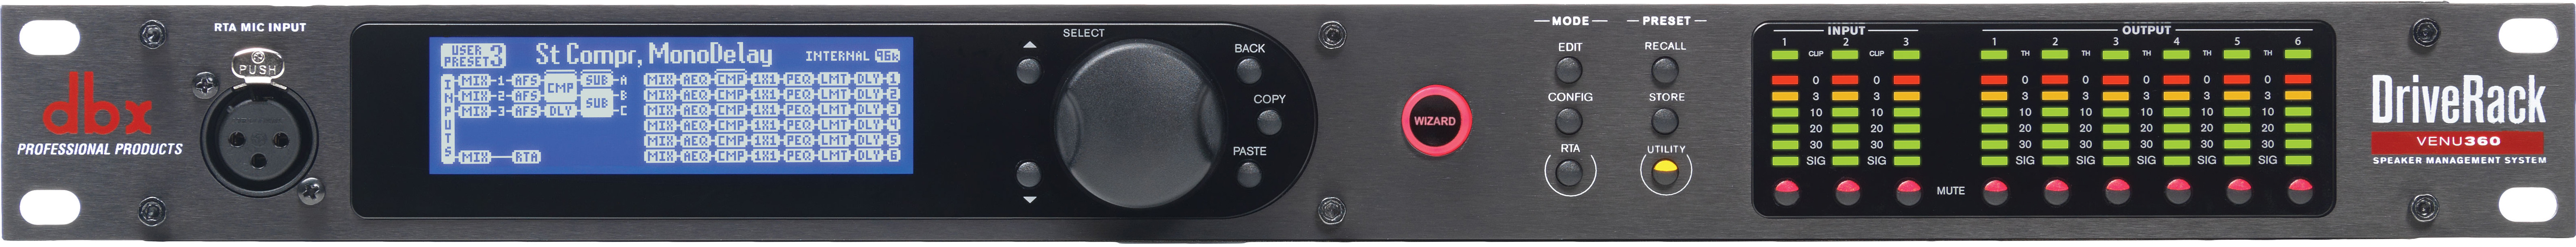 1 Renewed dbx DriveRack VENU360 Complete Loudspeaker Management System 